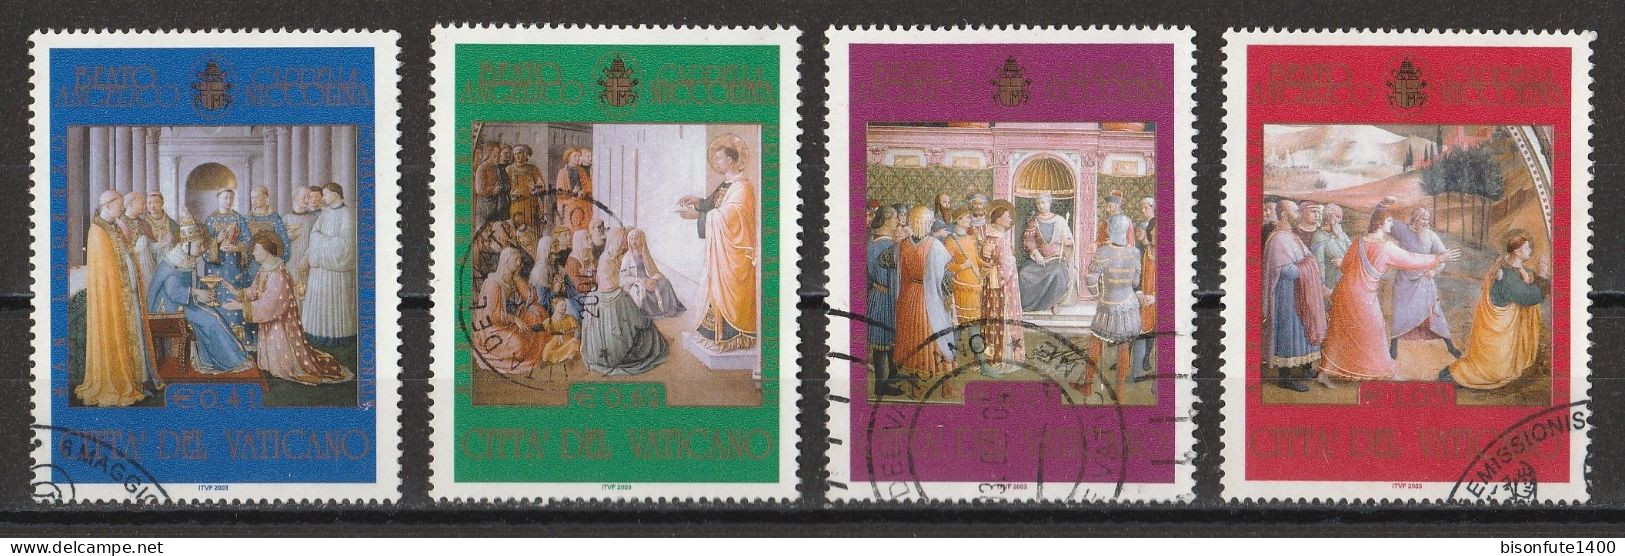 Vatican 2003 : Timbres Yvert & Tellier N° 1309 - 1310 - 1311 Et 1312 Oblitérés. - Oblitérés